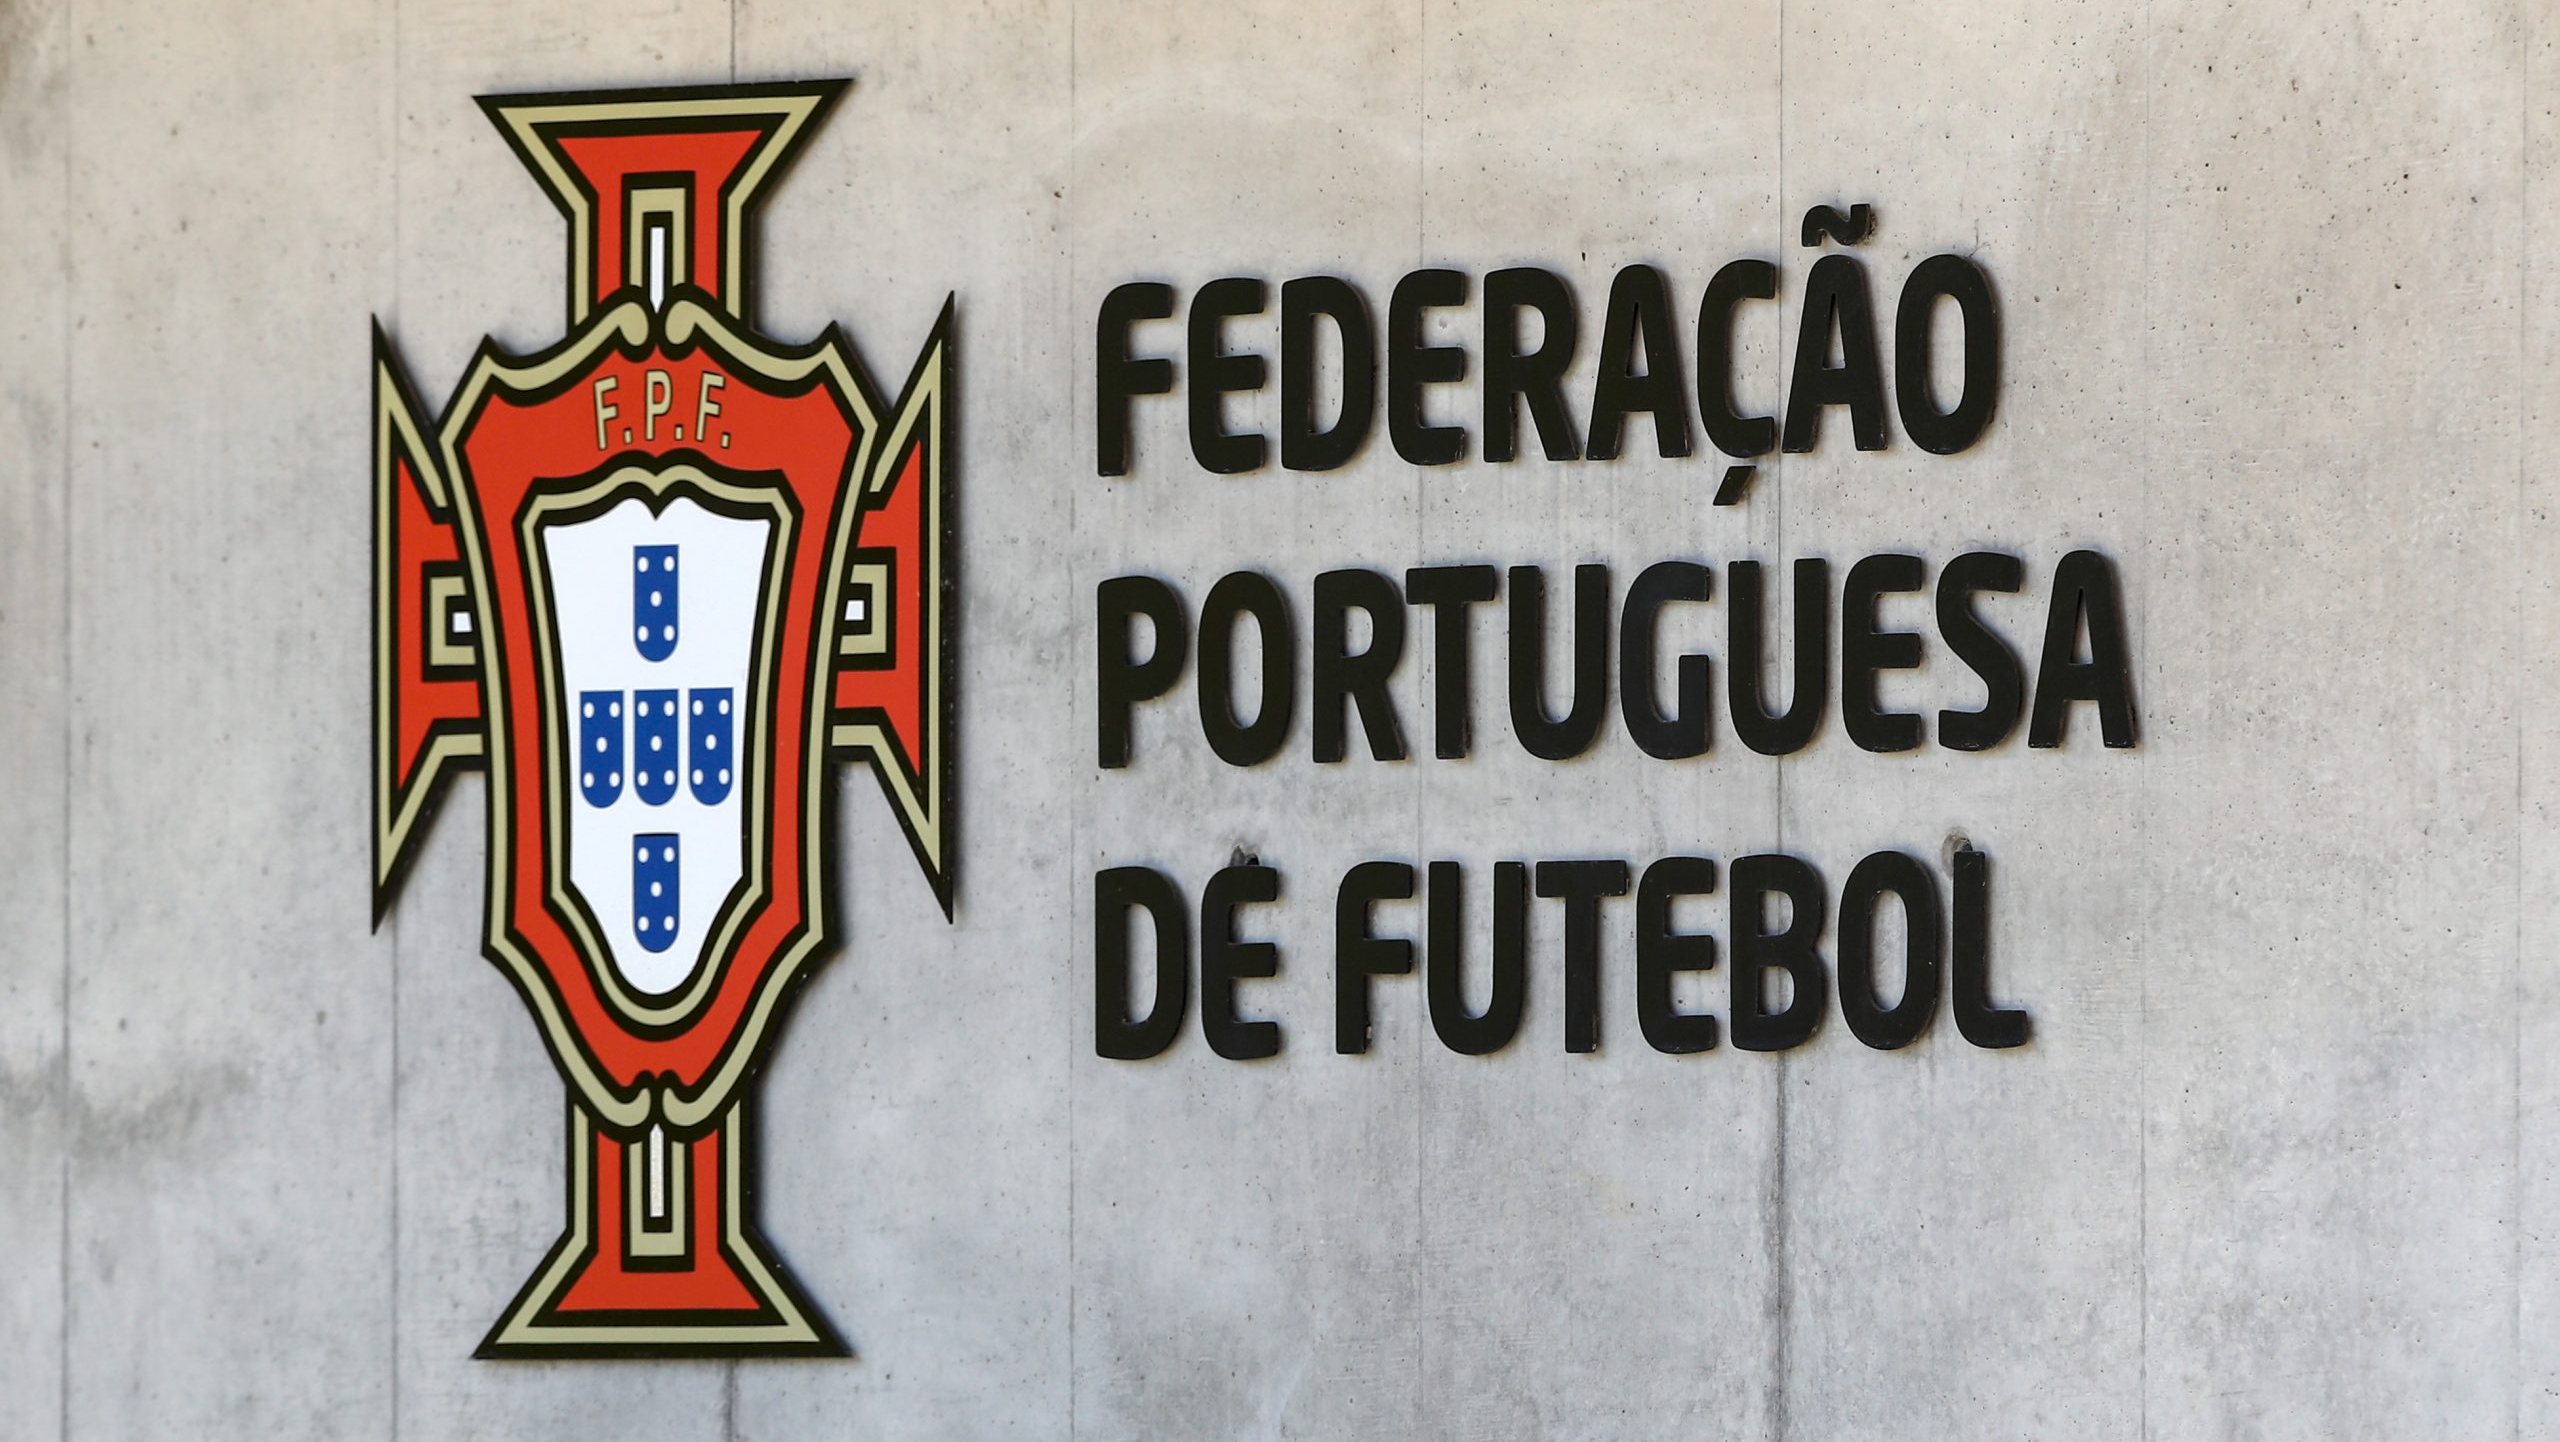 Logotipo da Federação Portuguesa de Futebol, Oeiras, 24 de junho de 2019. ANTÓNIO COTRIM/LUSA